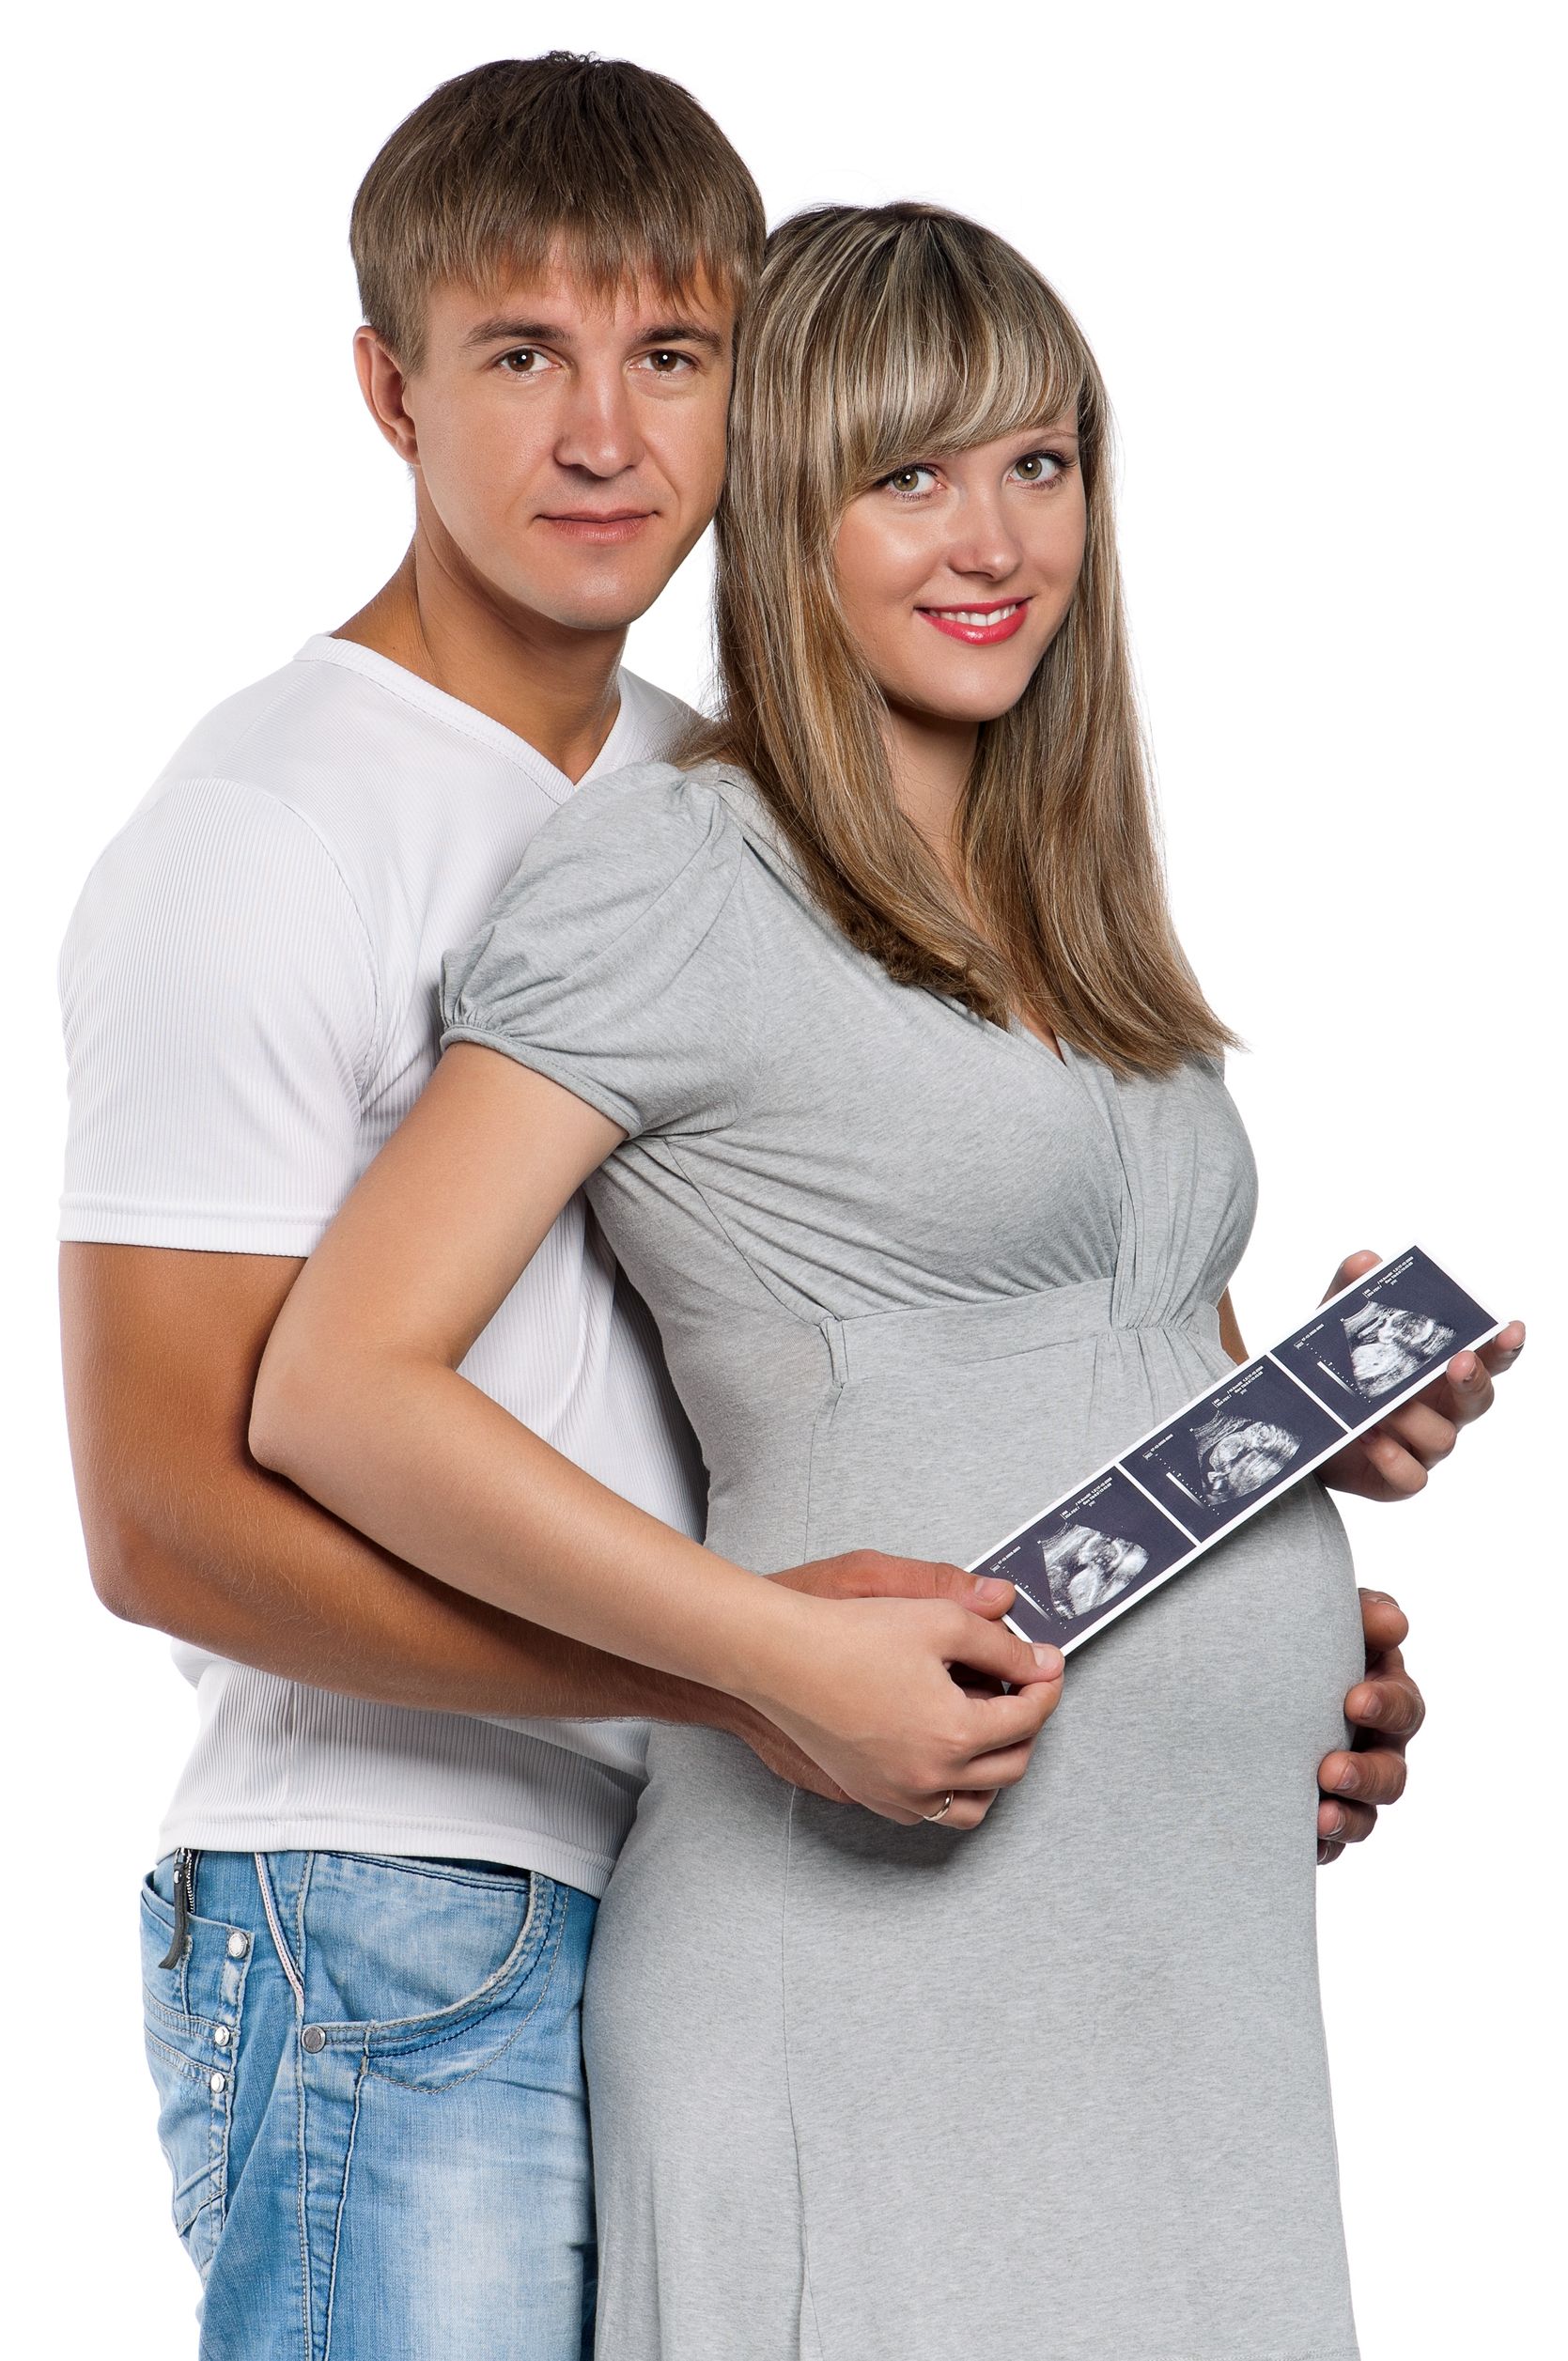 Teen Pregnancy Teen Moms Teen Parents Positive Parenting American SPCC